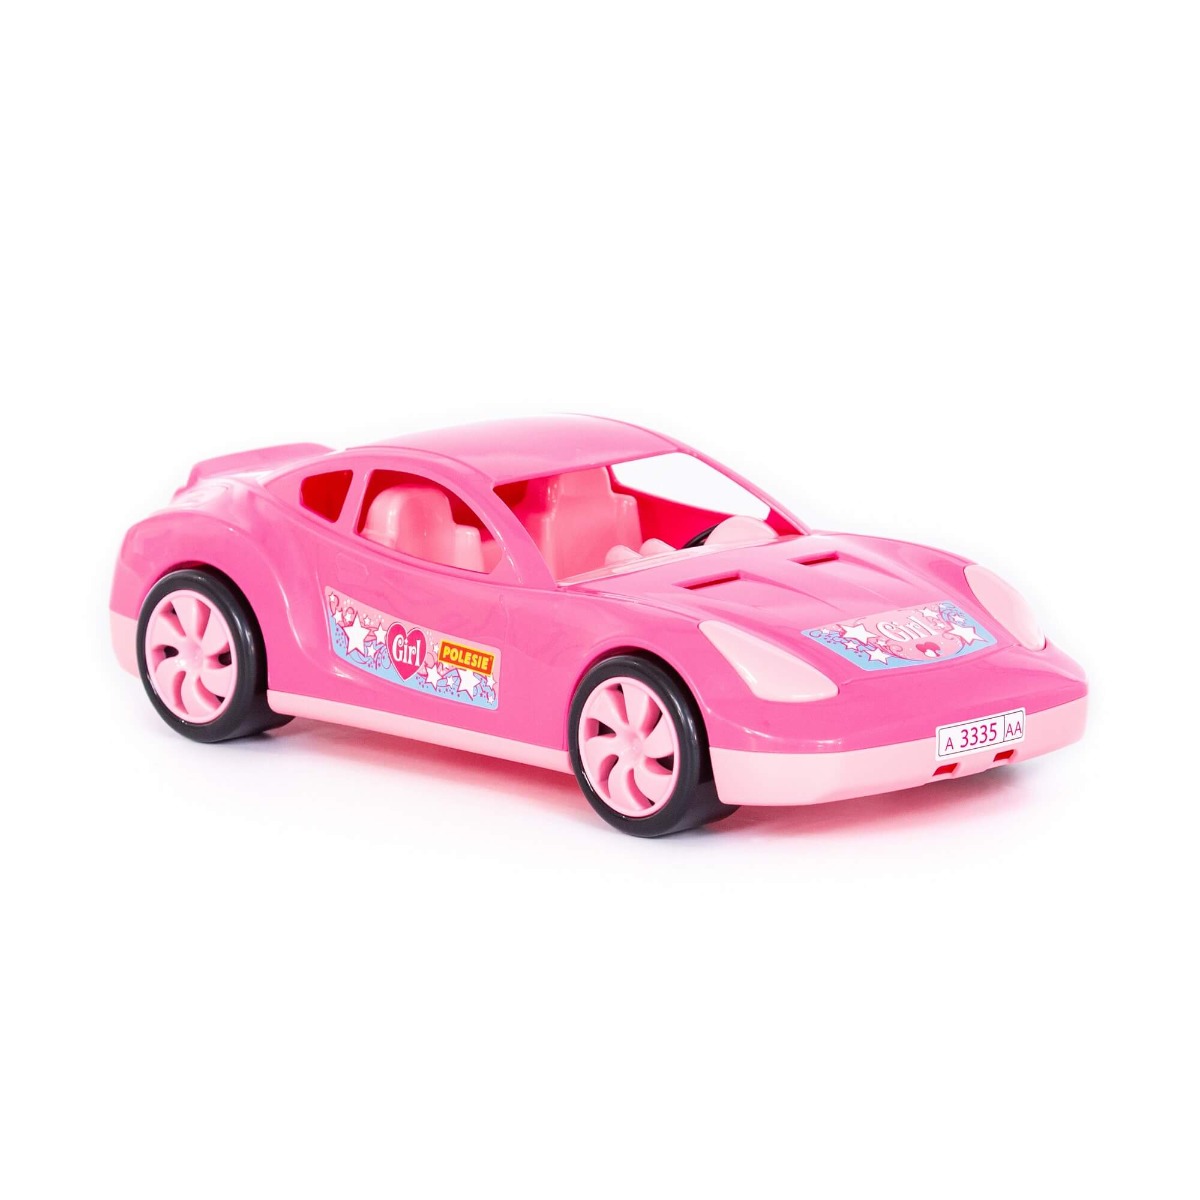 სარბოლო მანქანა "ტორნადო" - Polesie - Tornado racing car, pink pg-81222   